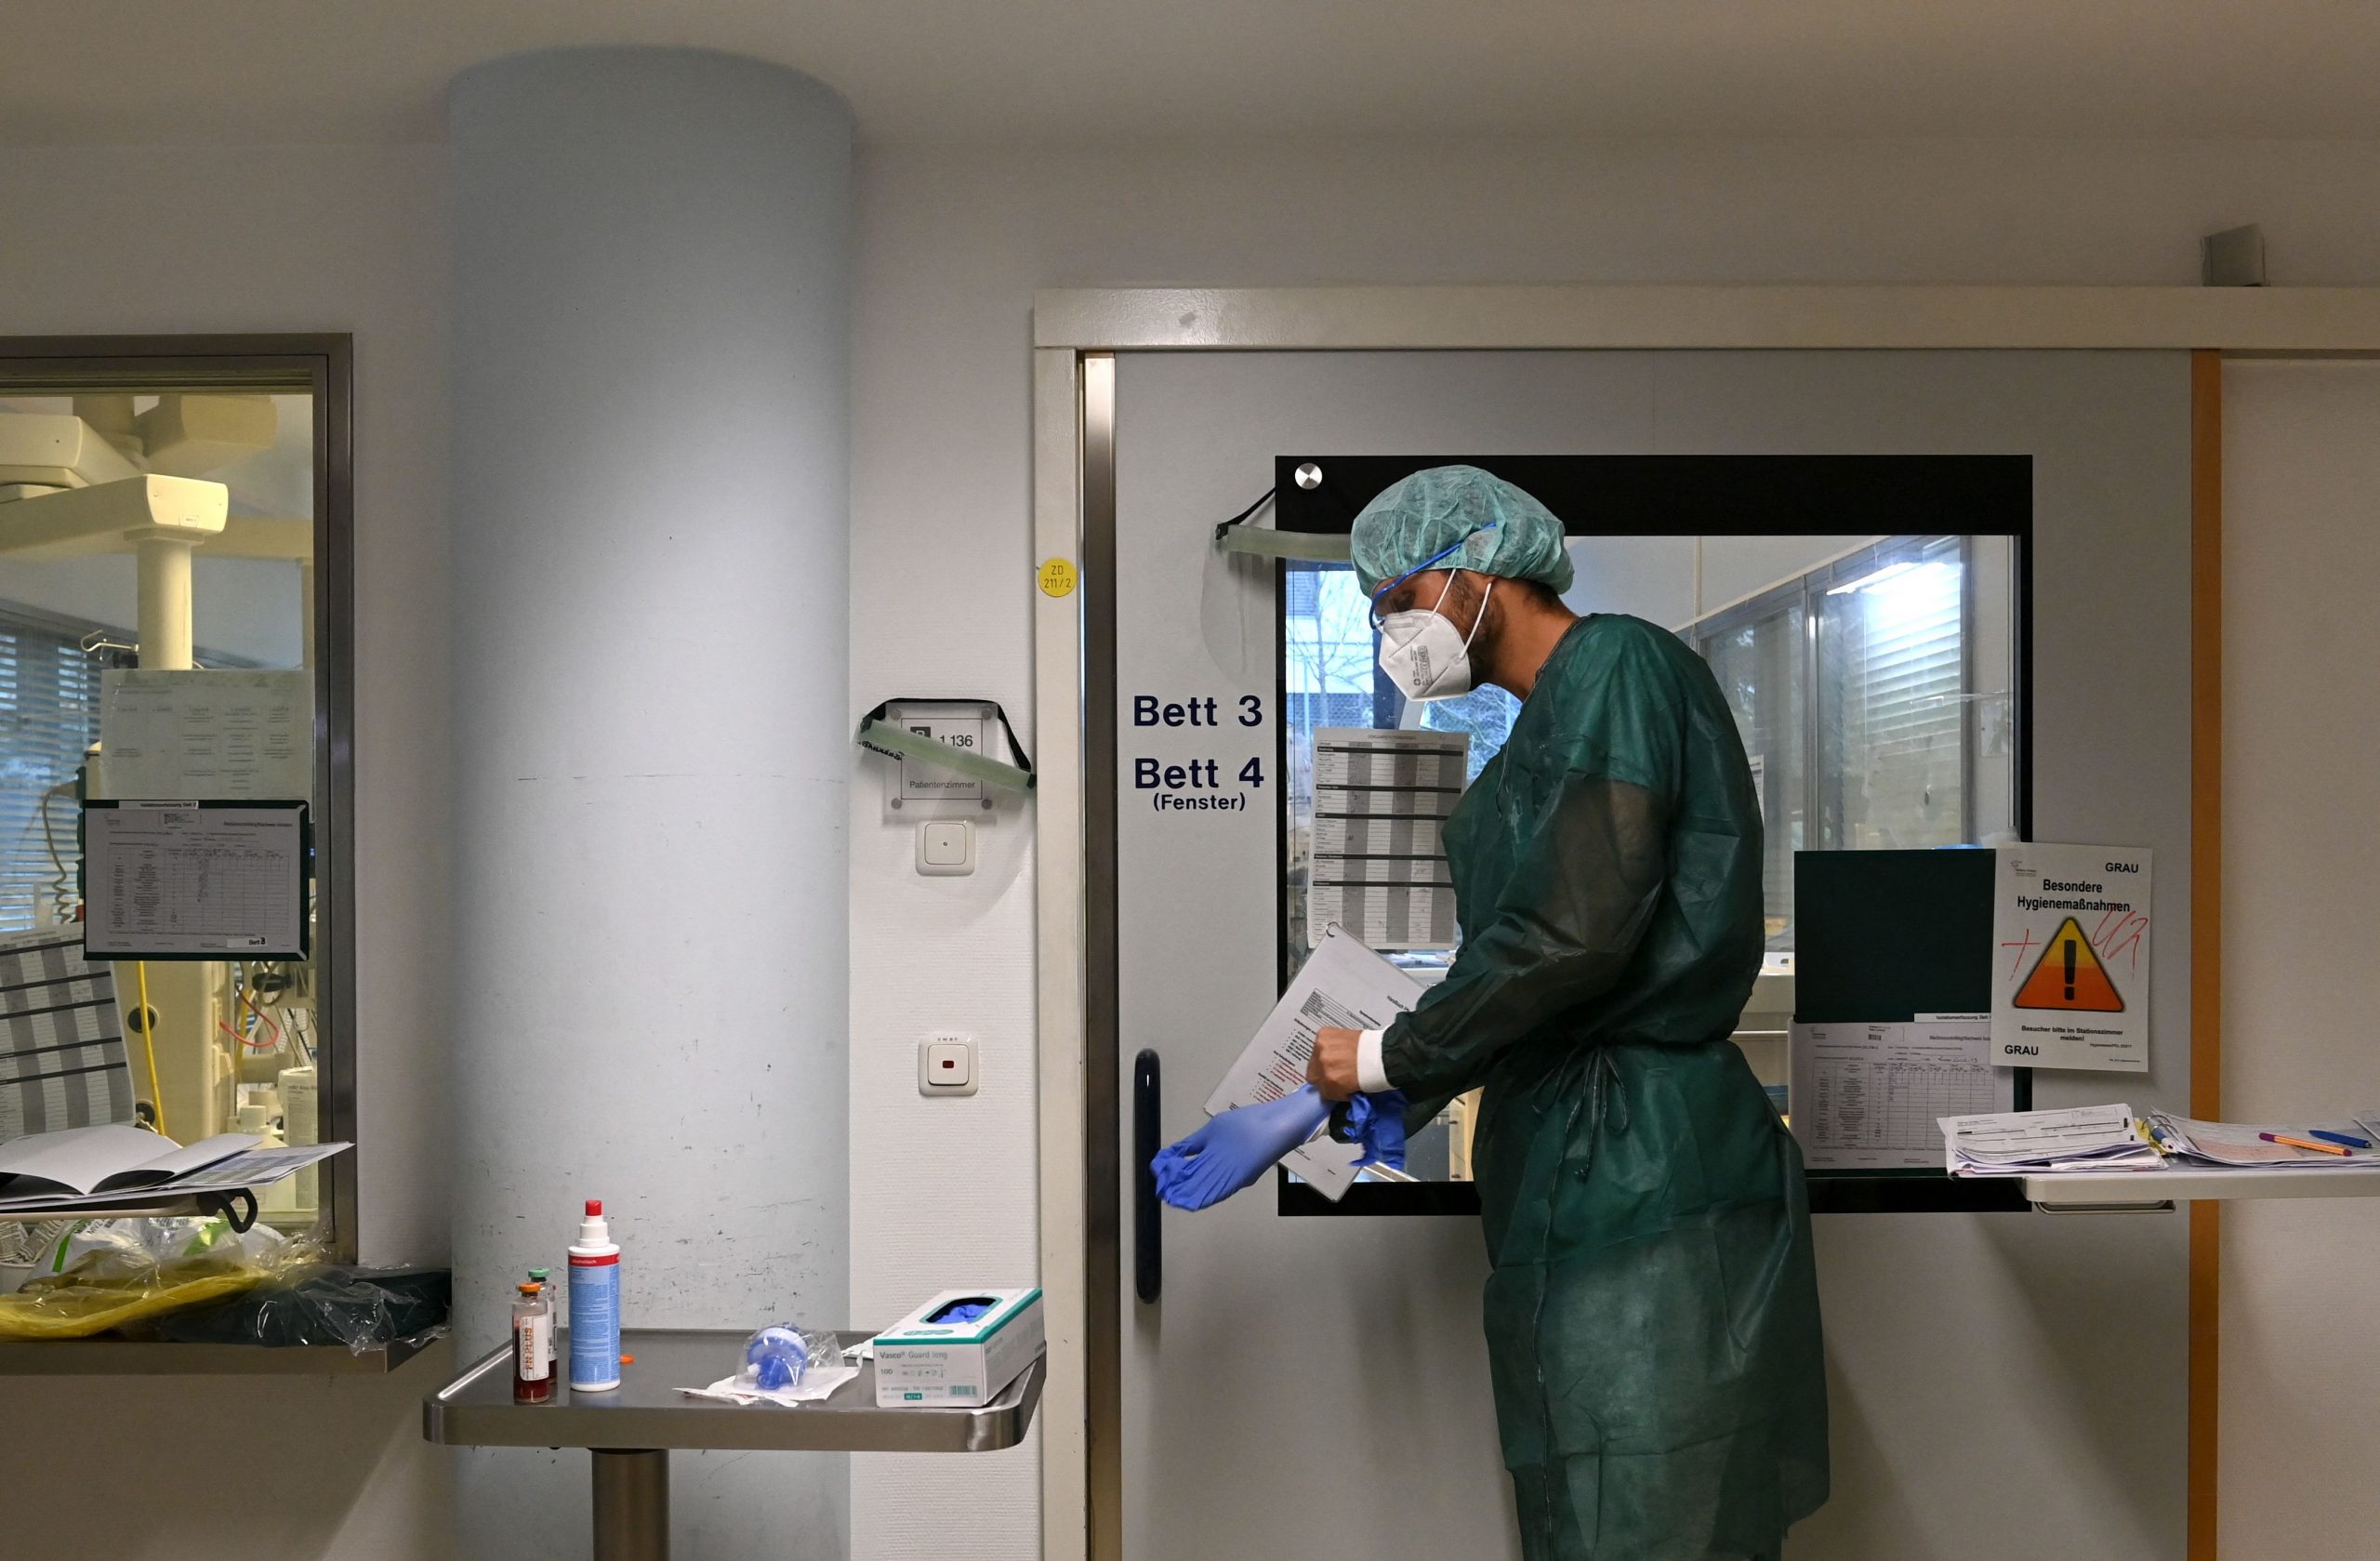 德国连续4天新增确诊过5万 官方忧暴第五波疫情